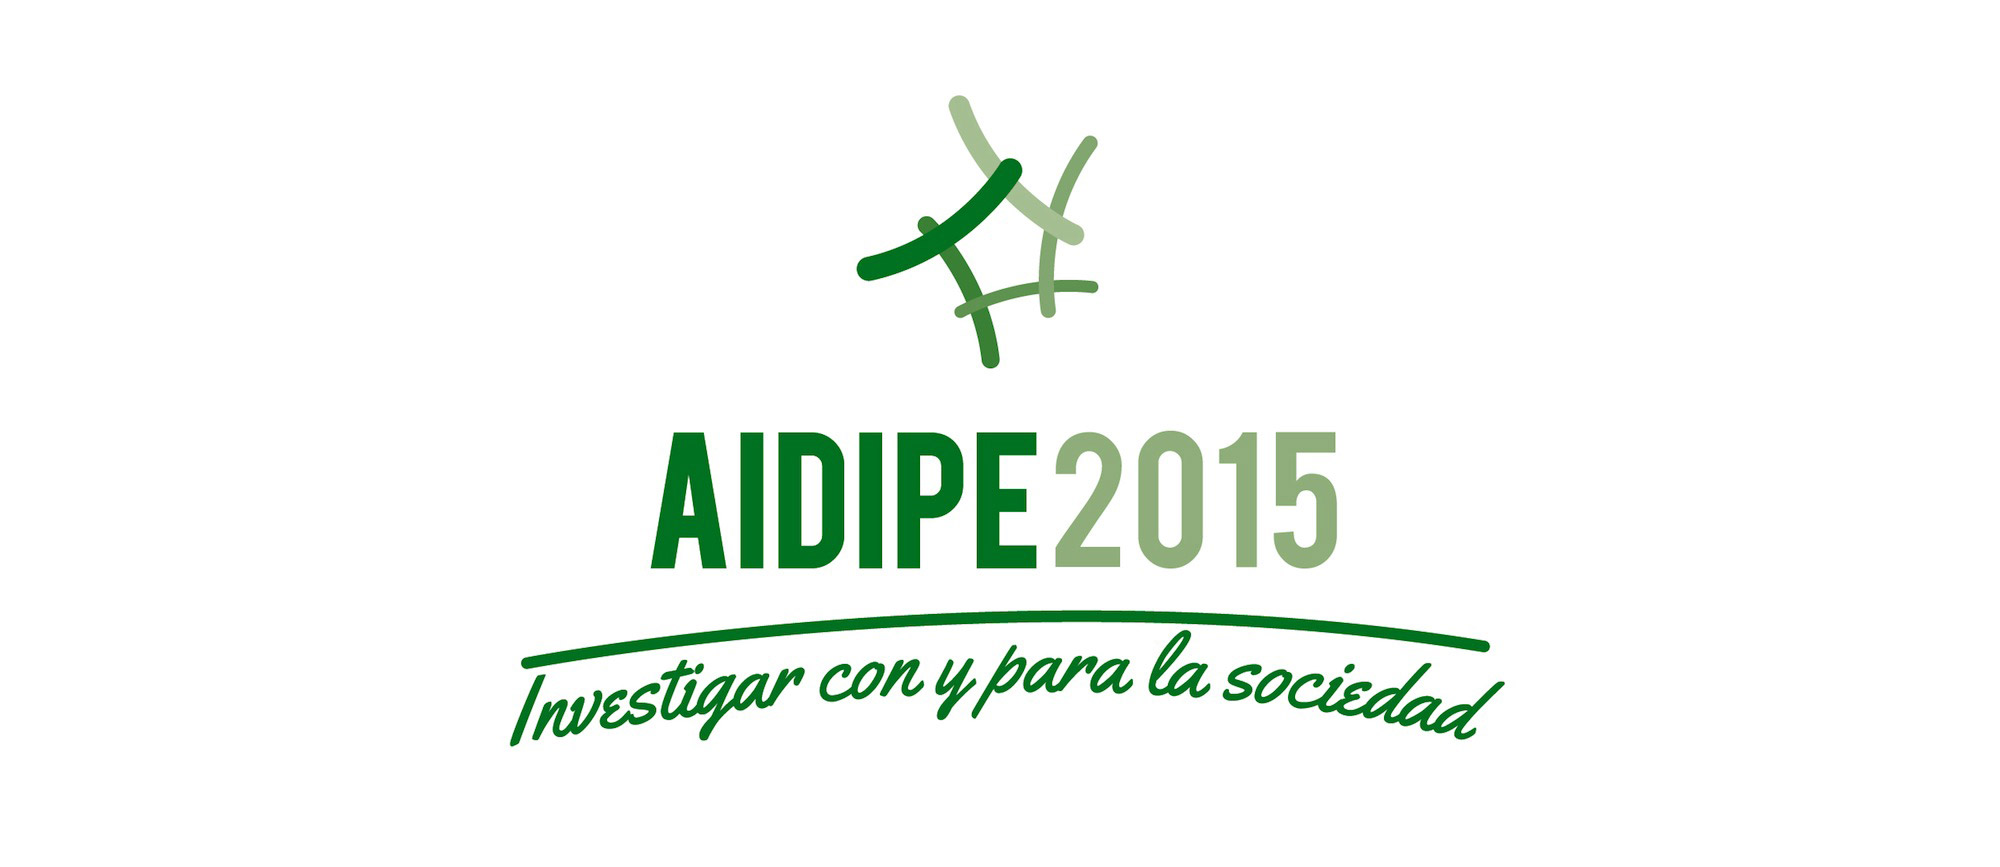 AIDIPE 2015 - Logotype